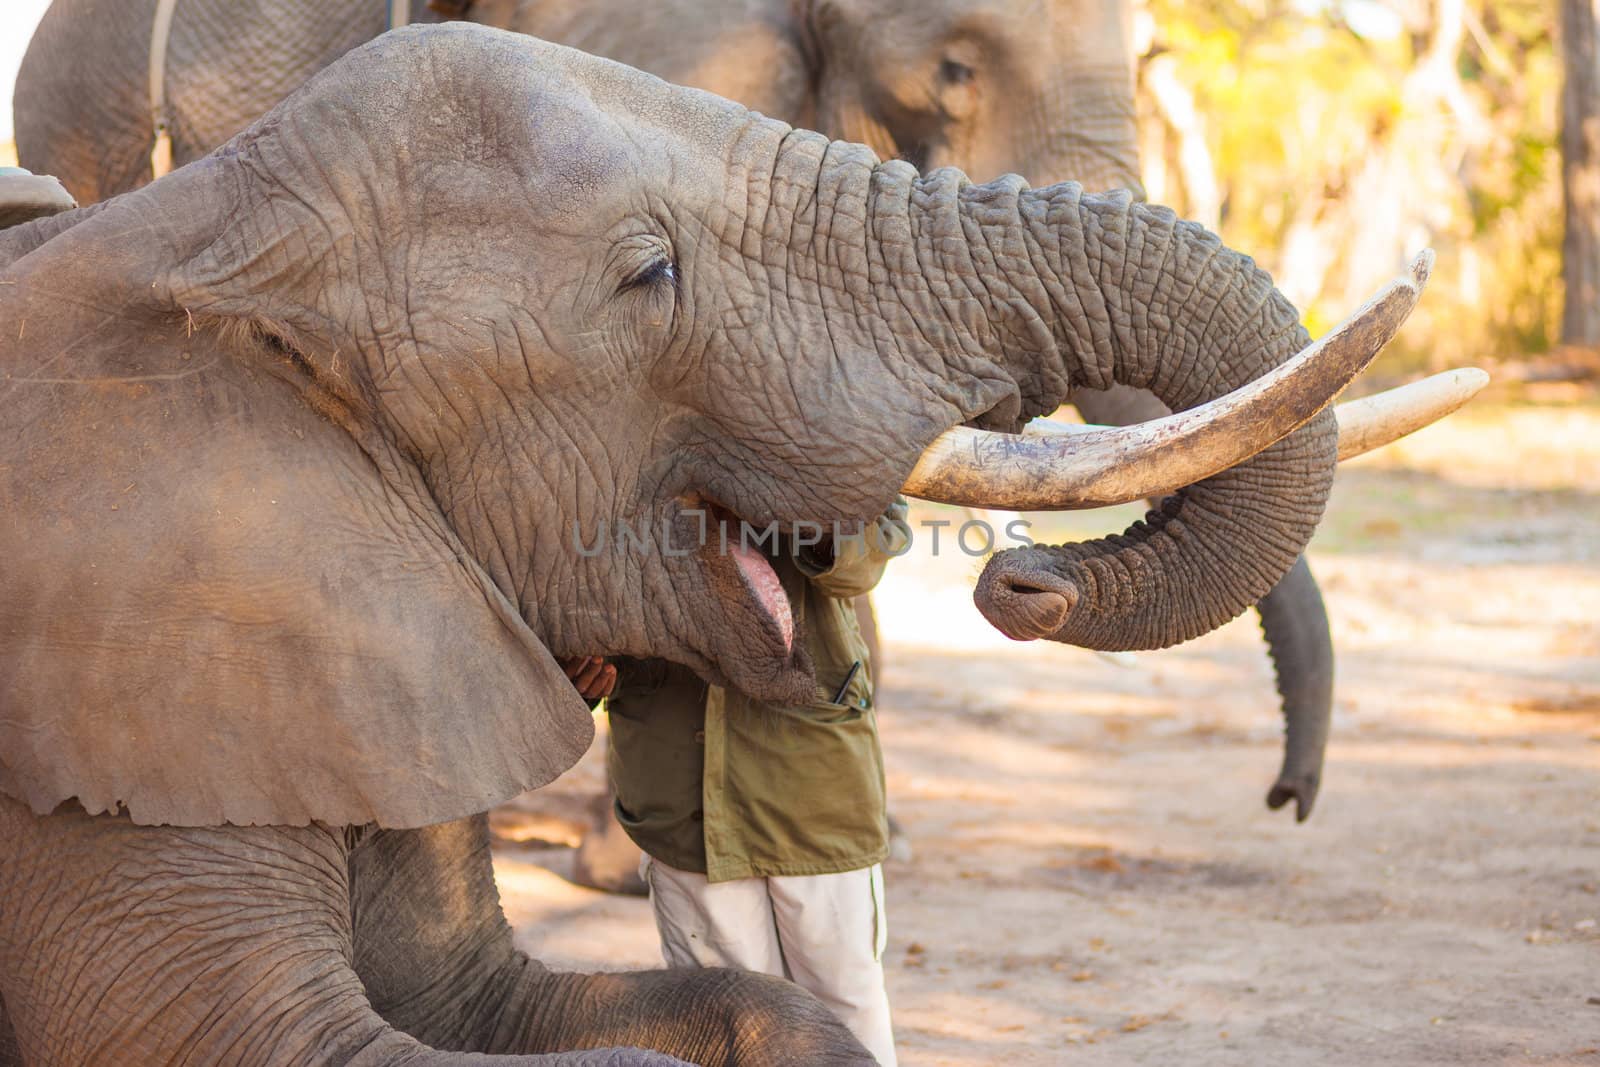 Elephant eating by edan